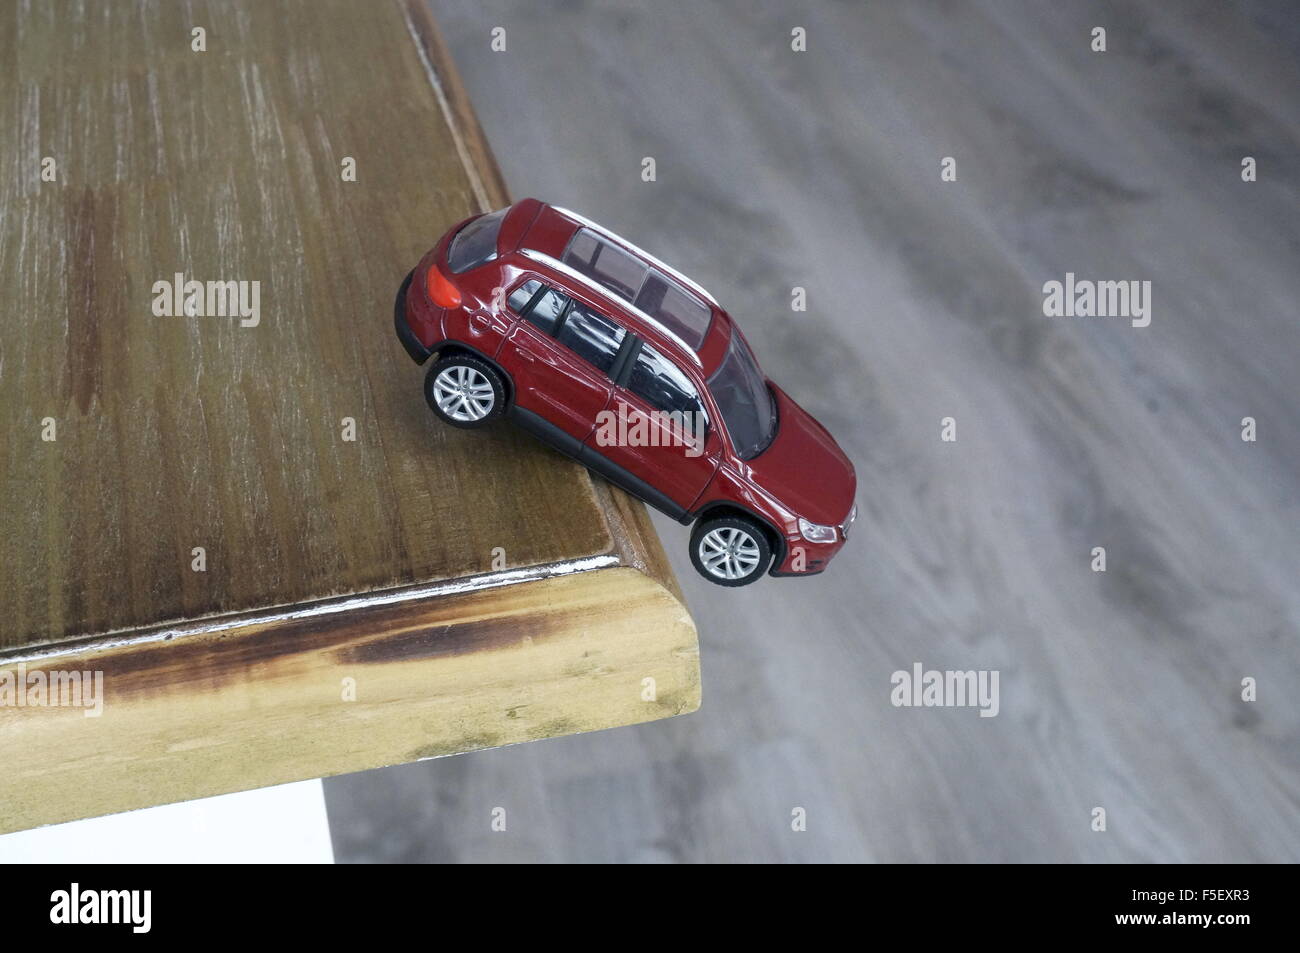 ILLUSTRATION - un modèle de voiture Volkswagen Tiguan 'VW' tombe du bord d'une table. La photo a été prise le 15 octobre 2015. Photo : S. Steinach - AUCUN FIL SERVICE - Banque D'Images